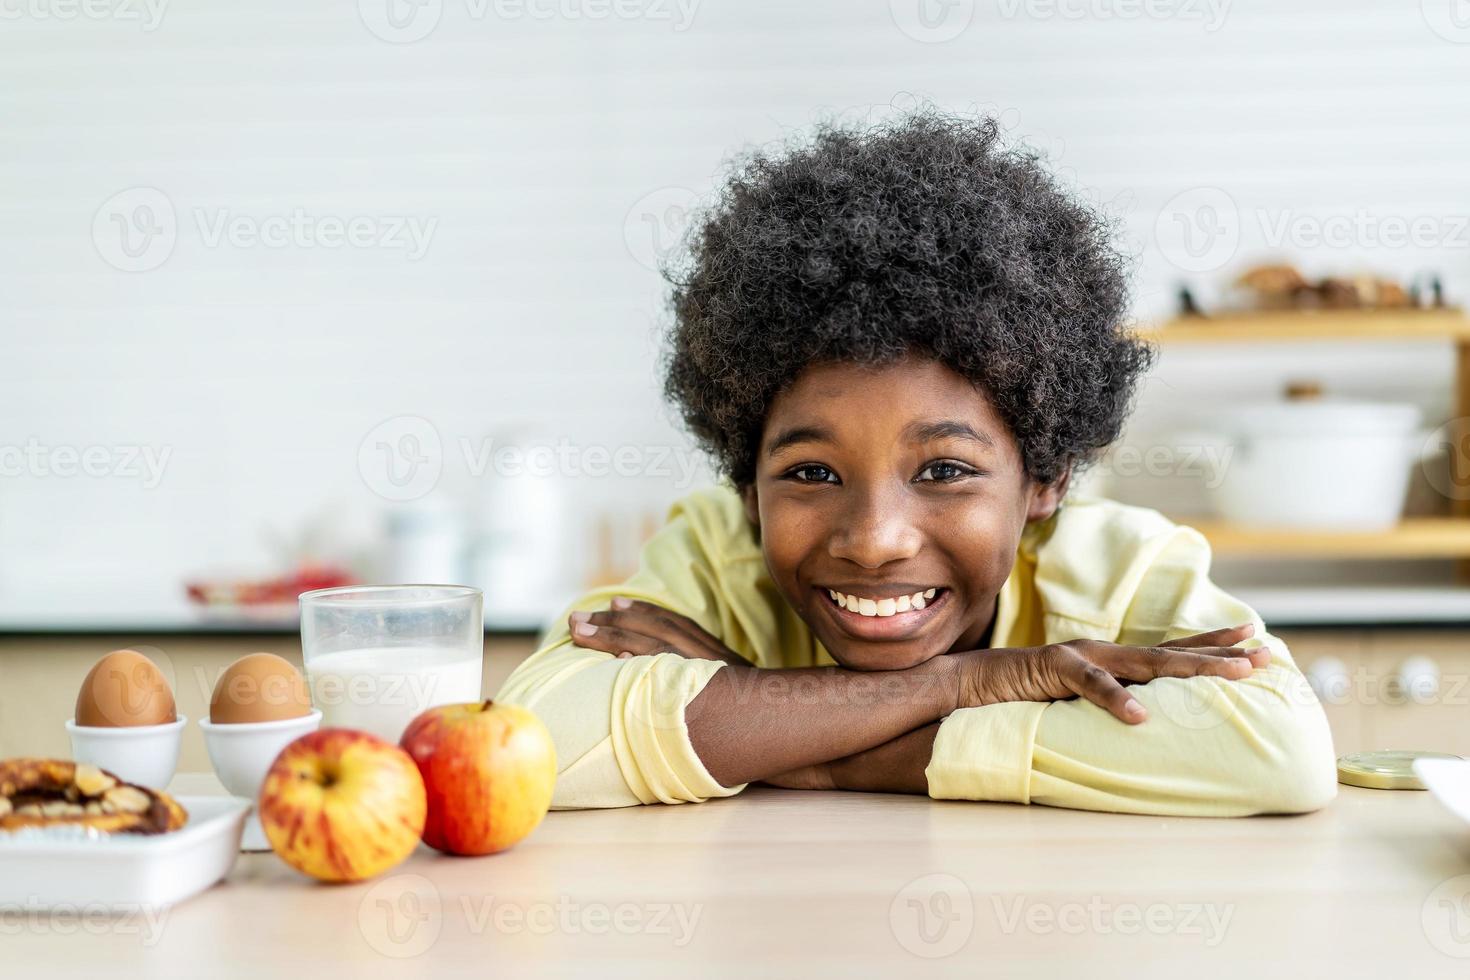 close-up sorridente menino bebendo copo de leite, sentado à mesa de madeira na cozinha, adorável criança desfrutando de iogurte de alimentos orgânicos, recebendo vitaminas e cálcio, conceito de saúde infantil foto